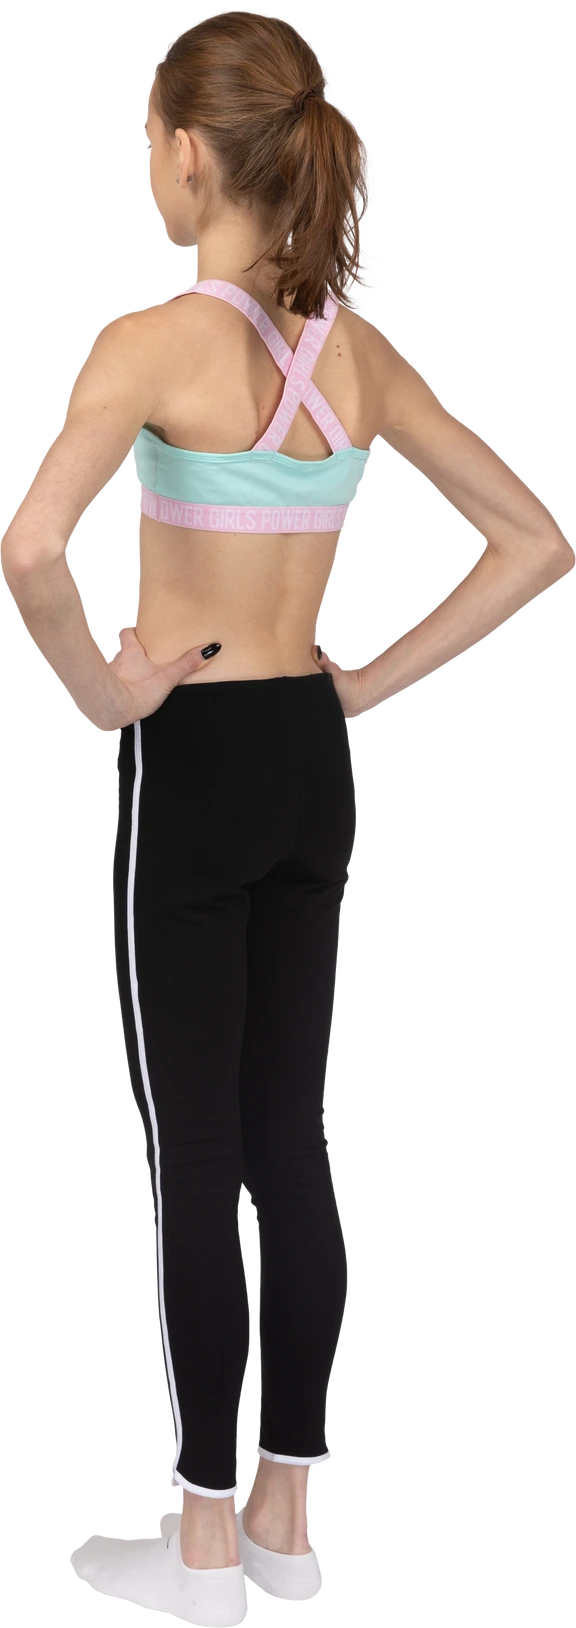 MSBV Teen Yoga Wear Athletic Wear for GENERATION Z! www